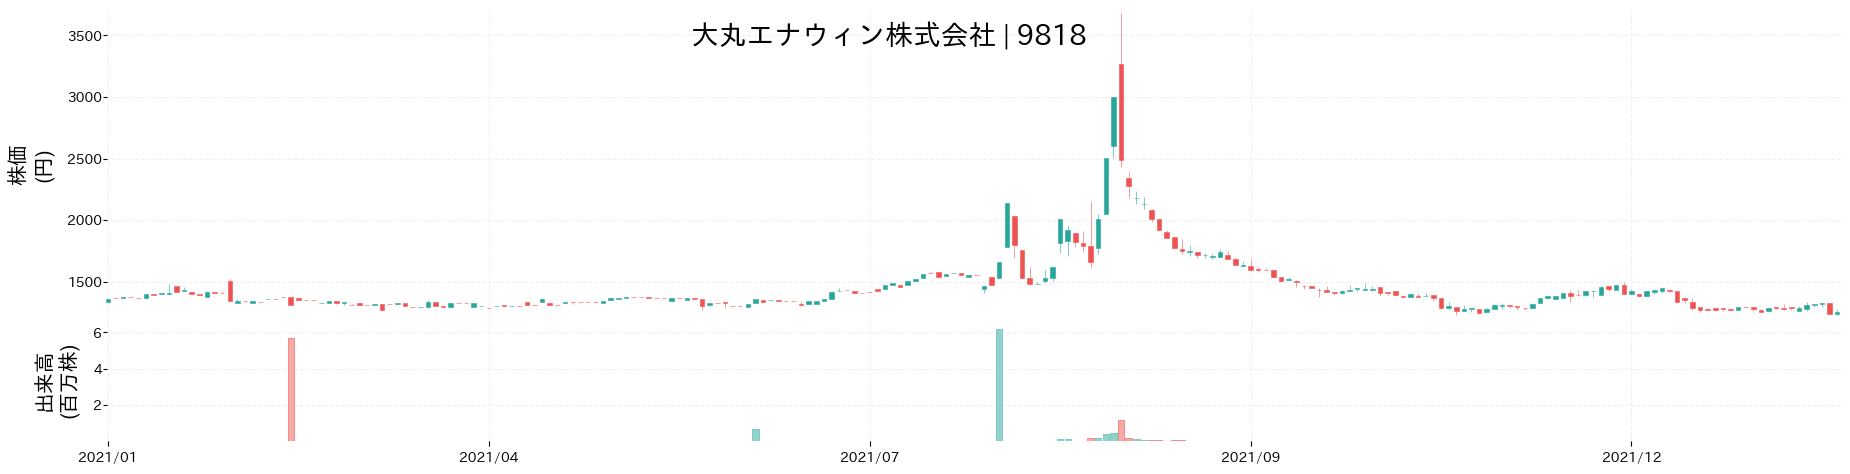 大丸エナウィンの株価推移(2021)